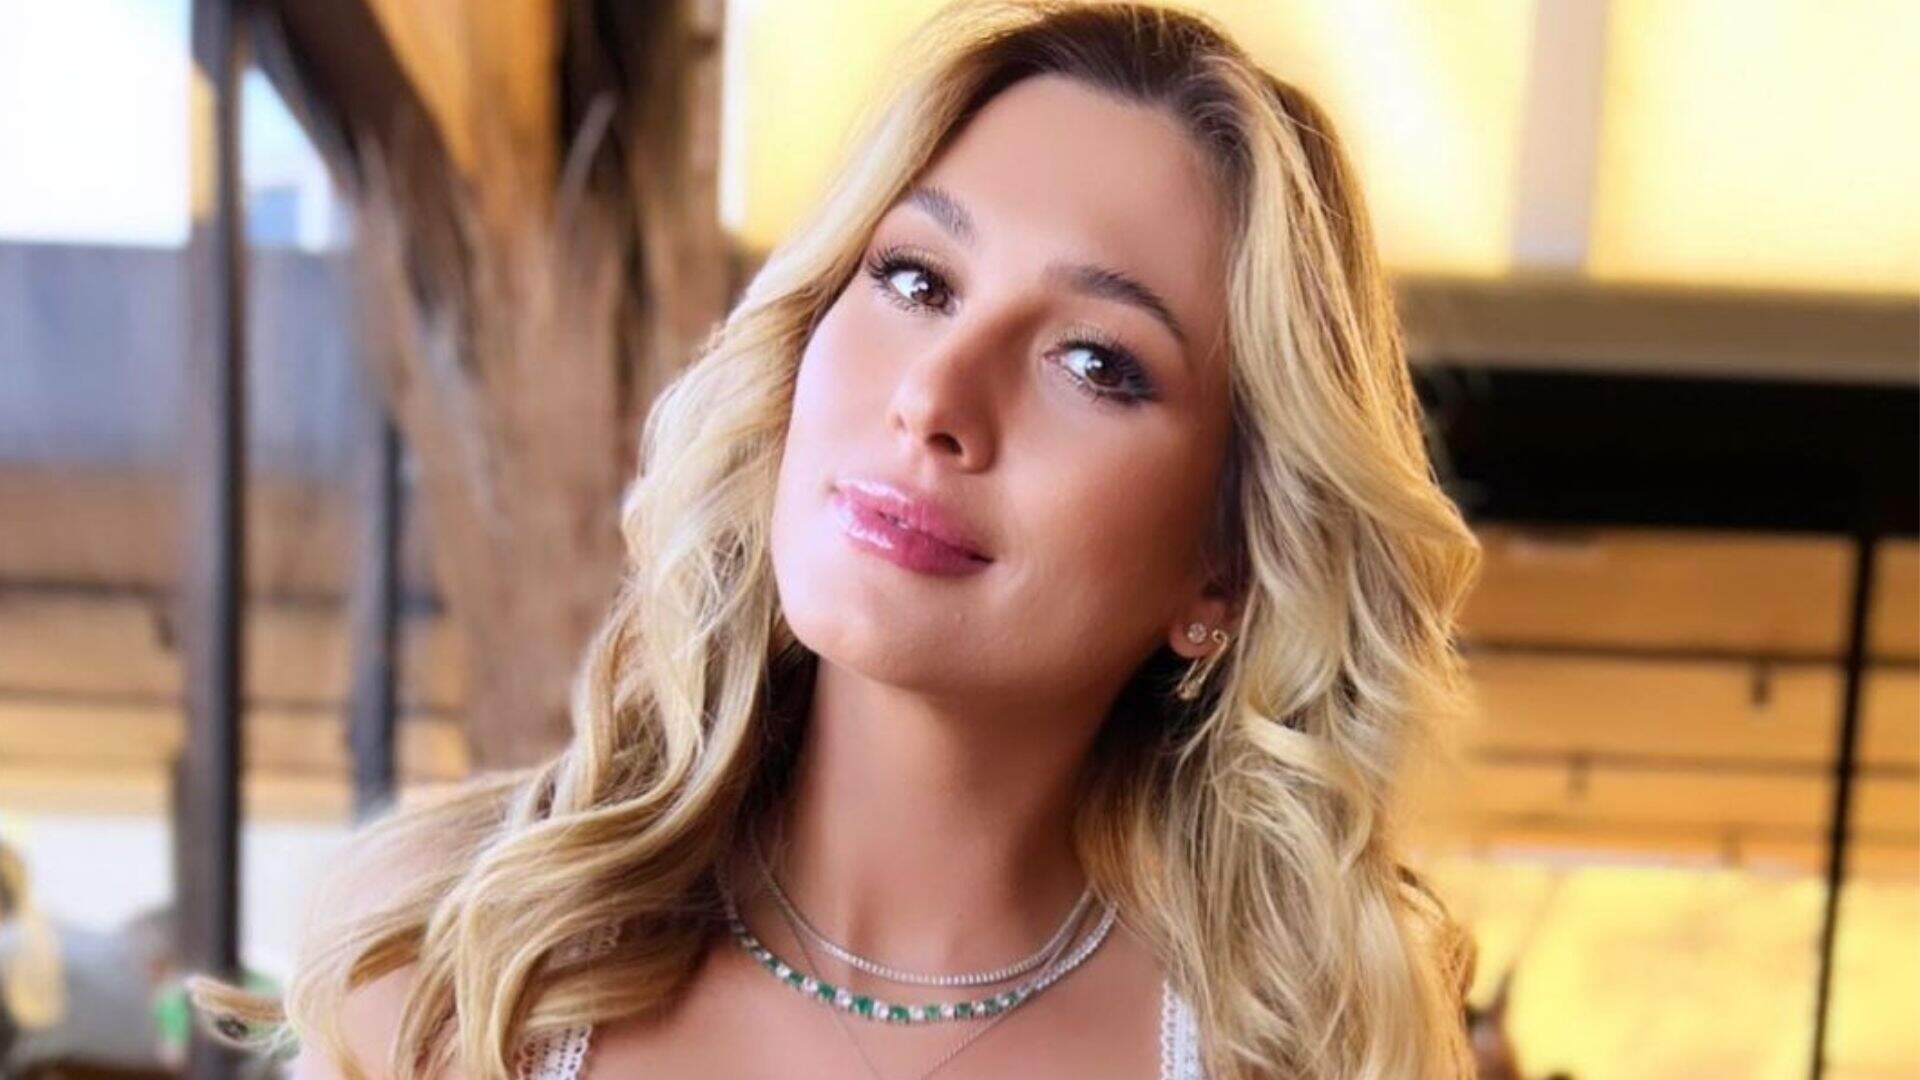 Fio-dental neon de Lívia Andrade revela bronzeado natural em clique de verão: “Eu amo” - Metropolitana FM